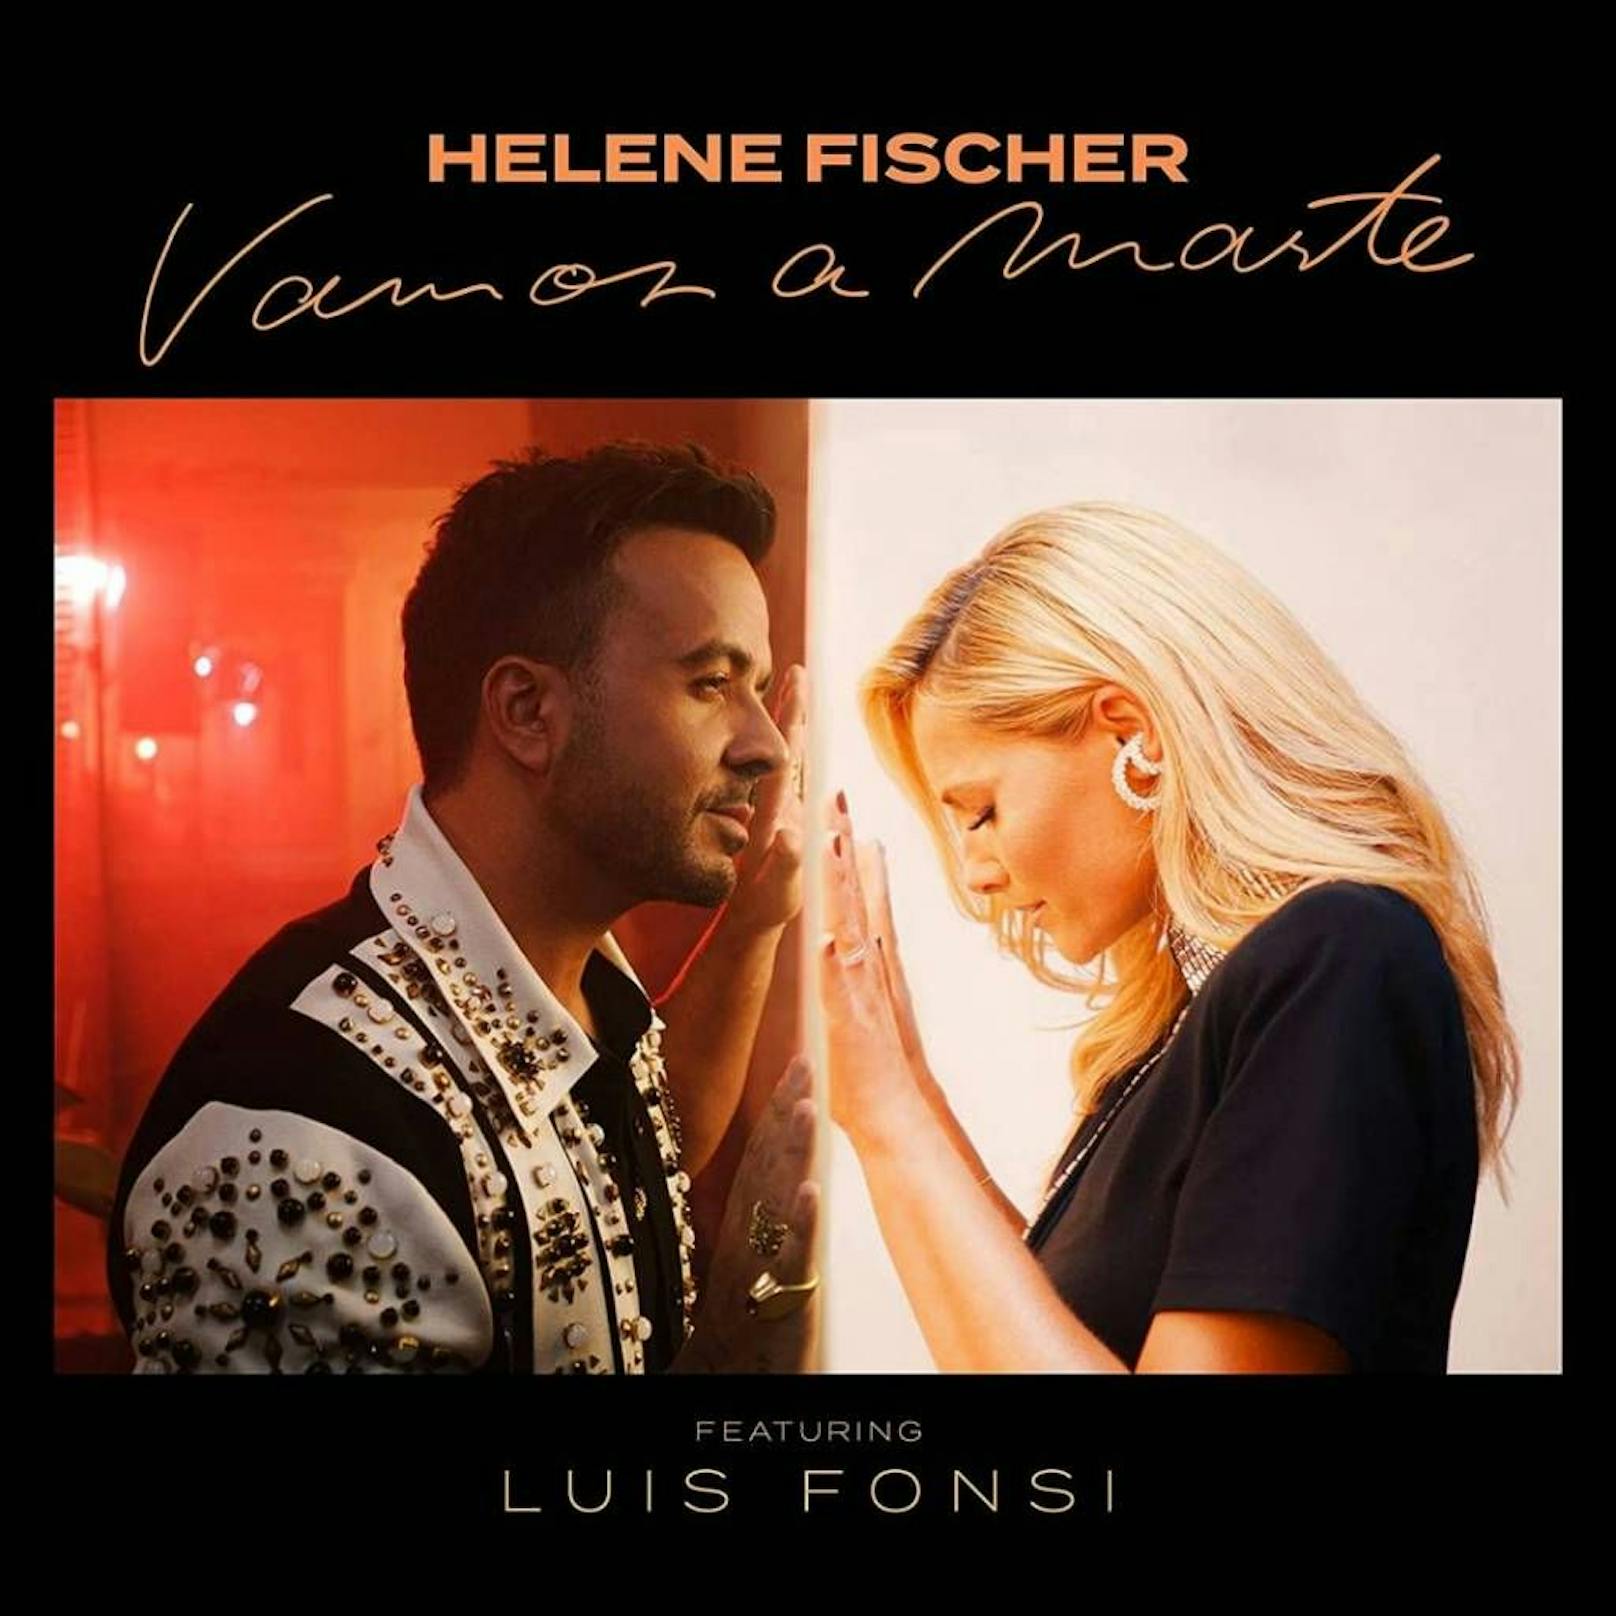 <strong>Helene Fischer feat. Luis Fonsi "Vamos A Marte"</strong>: Das Warten hat ein Ende!&nbsp;Ganze vier Jahre sind seit dem letzten Album der 36-Jährigen vergangen. Jetzt gibt es endlich wieder was ihr zu hören, noch dazu mit dem "Despacito"-Superstar. <a href="https://www.heute.at/s/hoerprobe-geleaked-so-klingt-helene-fischers-neuer-song-100155881">Hier eine kleine Hörprobe &gt;&gt;</a>